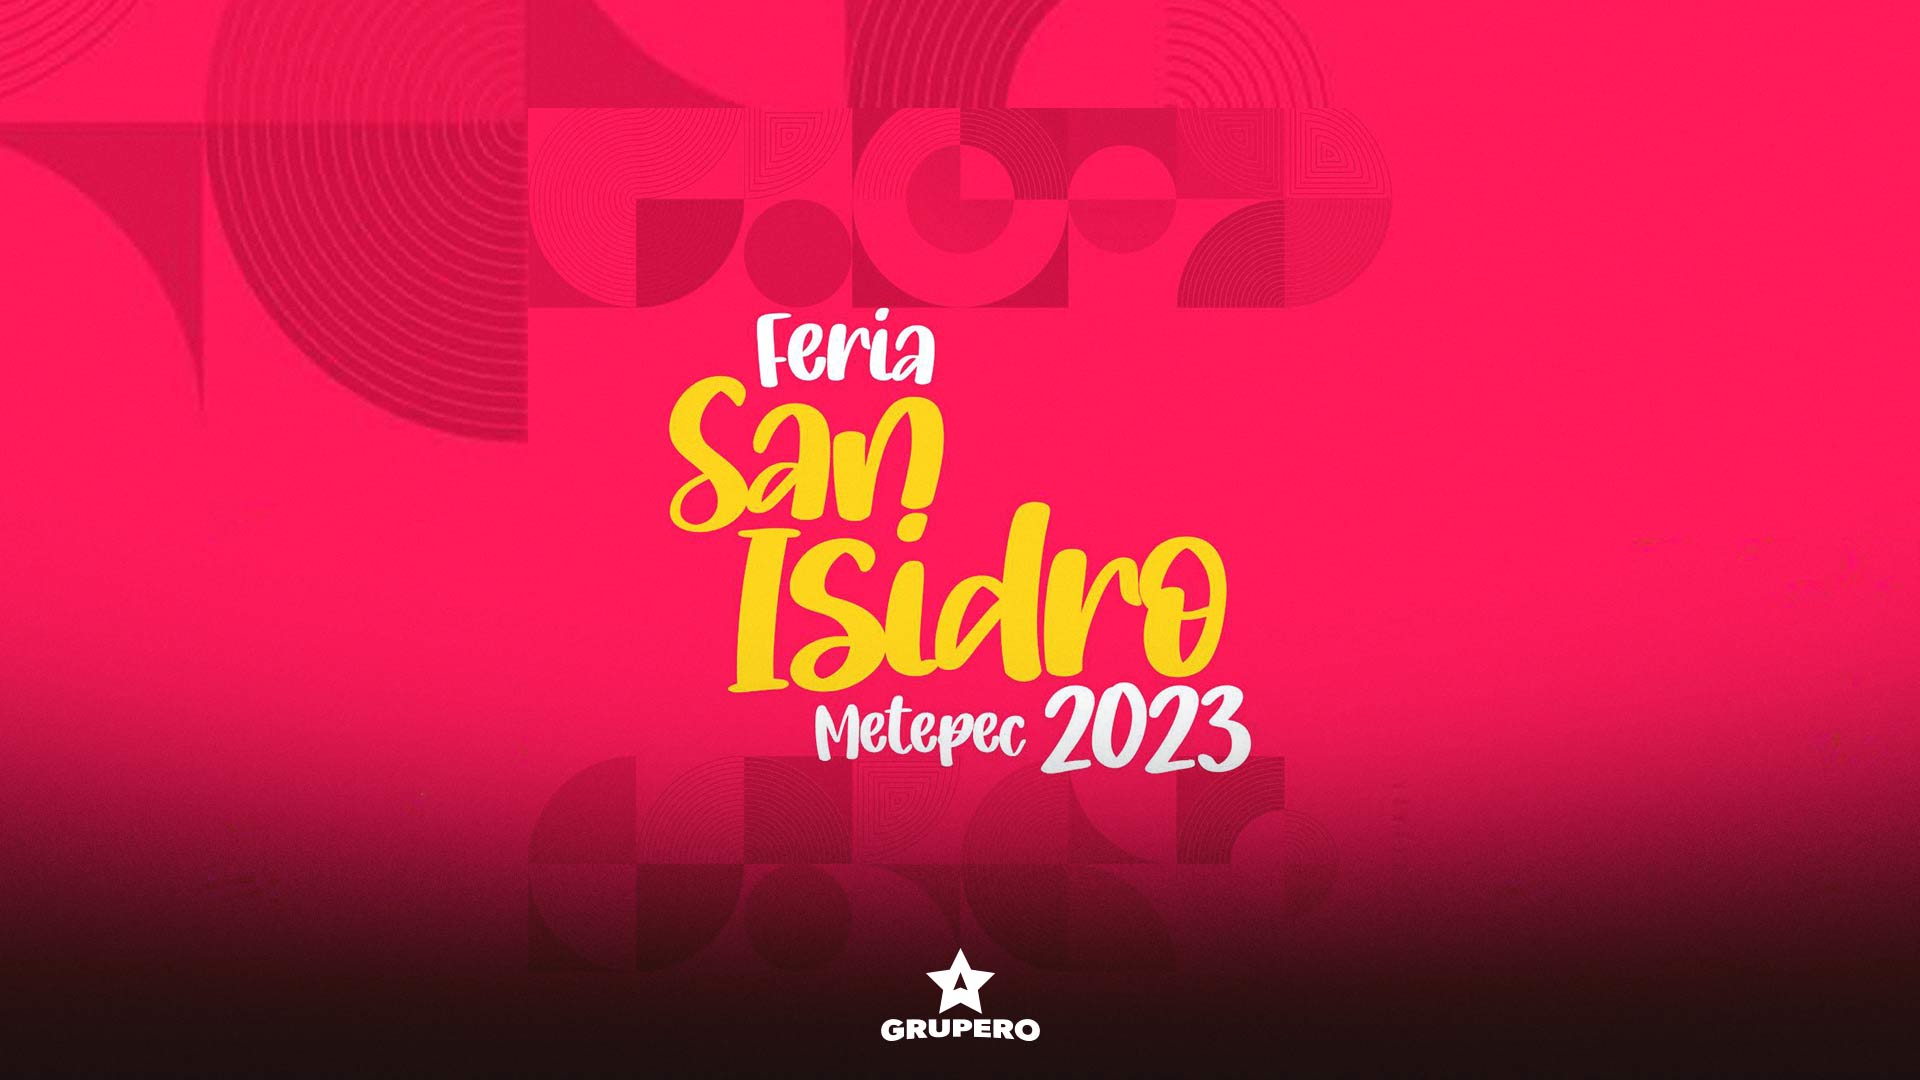 Feria San Isidro Metepec 2023